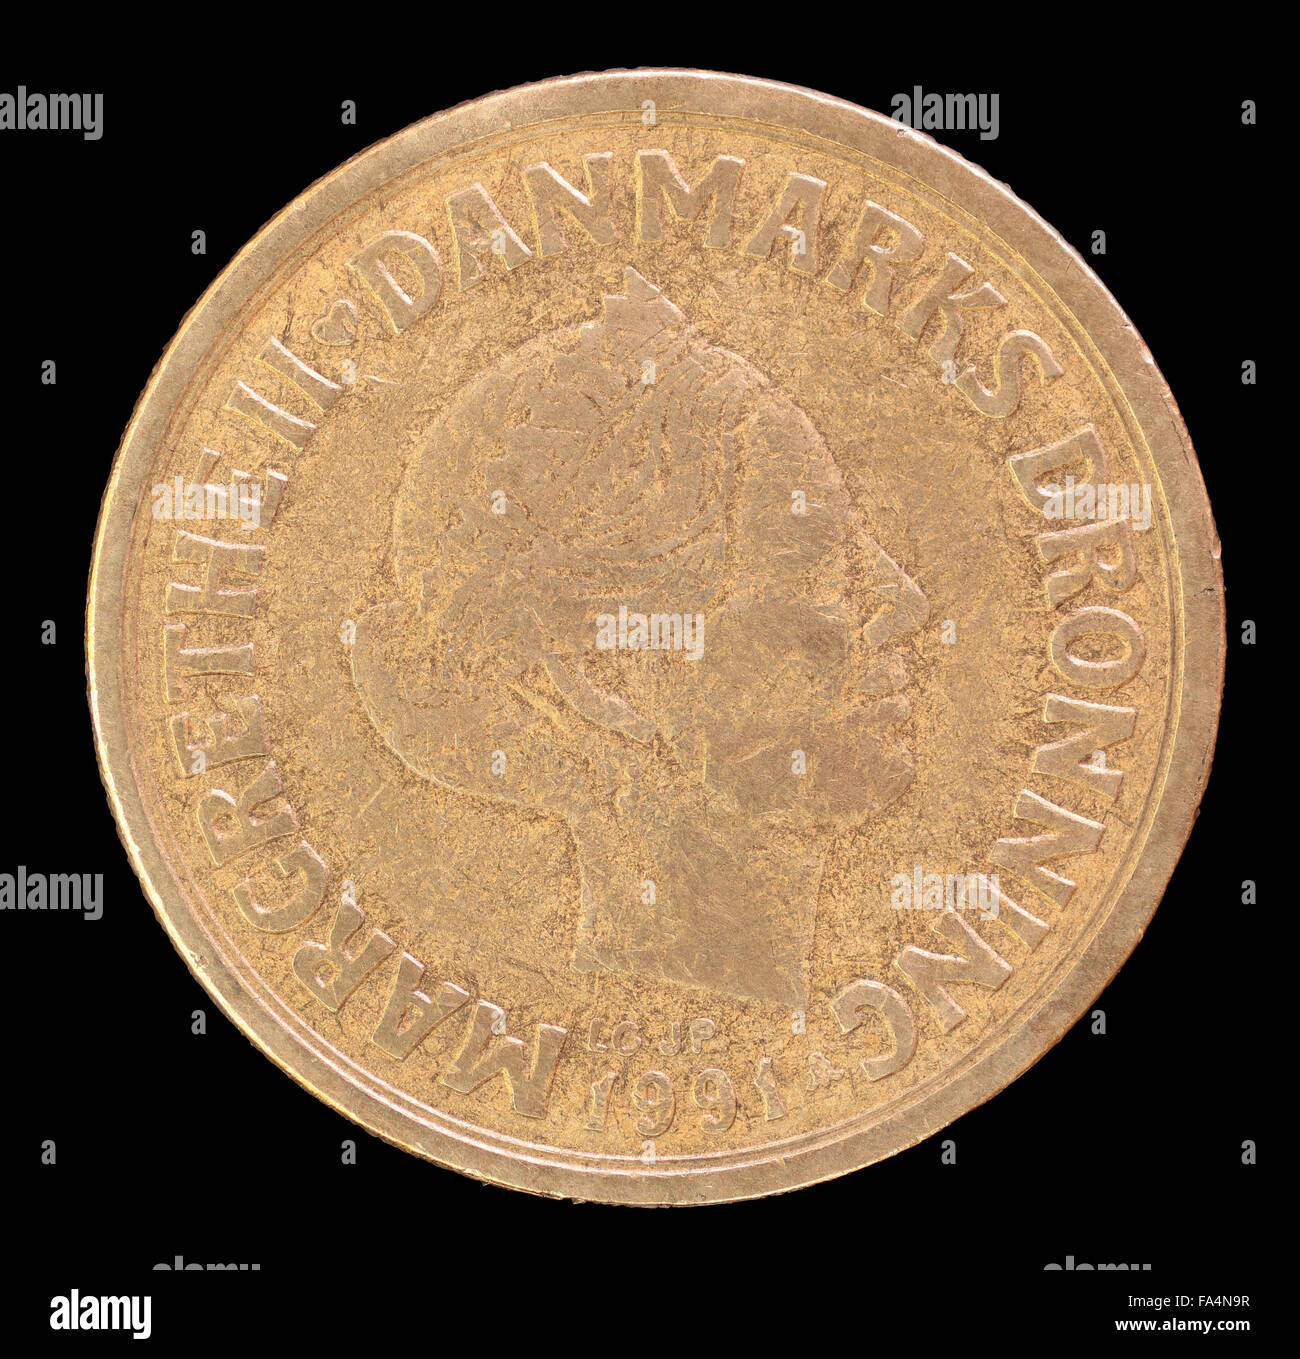 La faccia di testa di 20 krone coin, rilasciati dalla Danimarca nel 1991, raffigurante un ritratto della regina Margrethe II. Immagine isolata su nero b Foto Stock